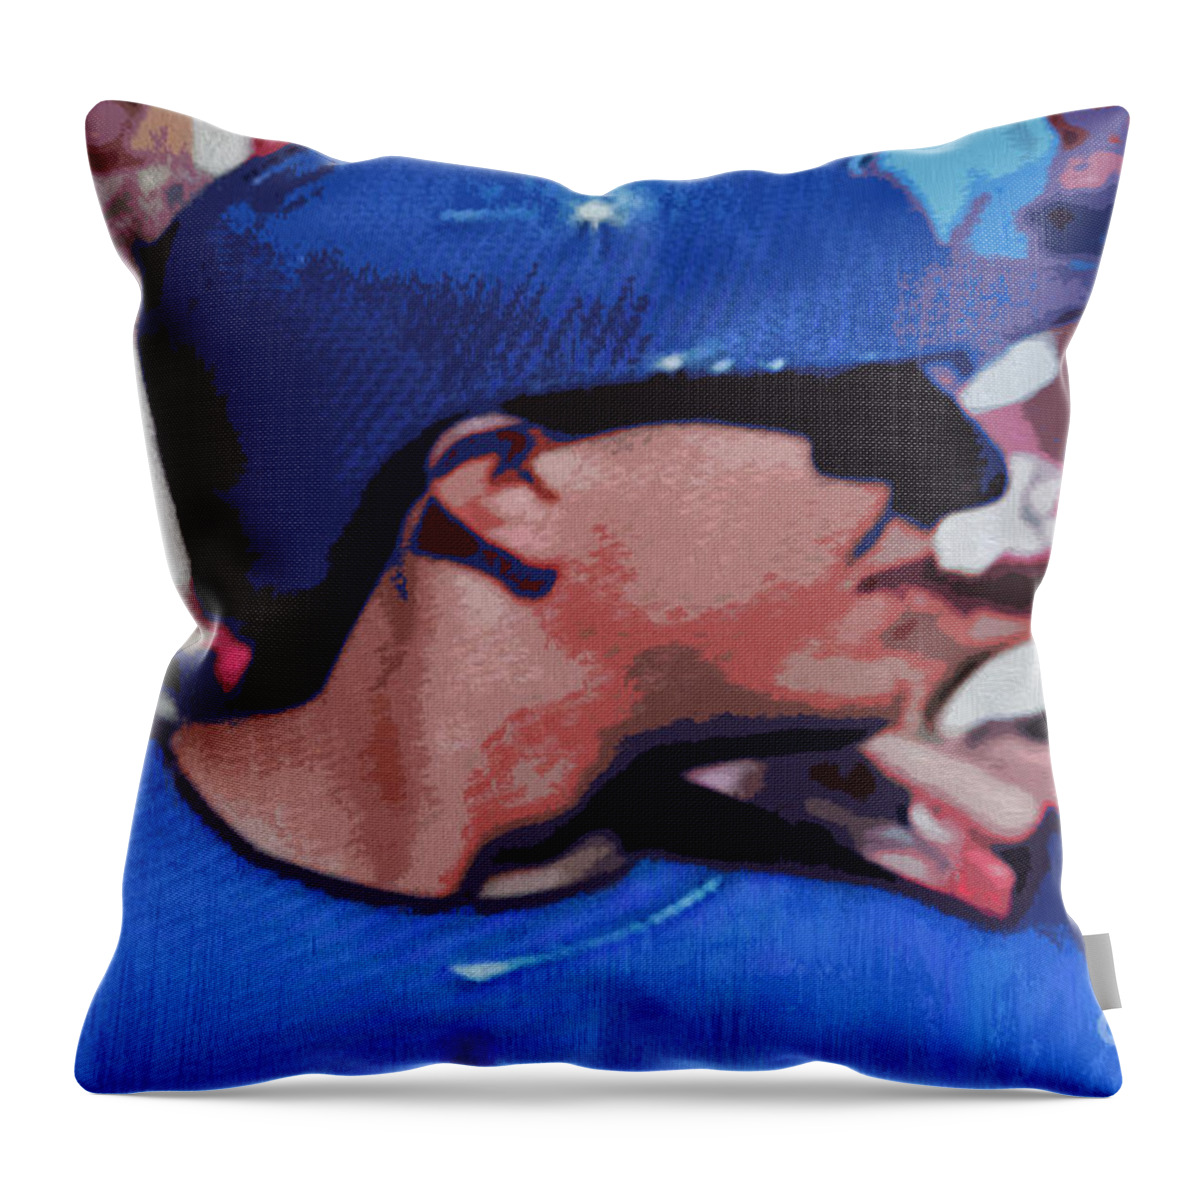 Troy Tulowitzki Throw Pillow featuring the digital art Troy Tulowitzki by Nina Silver